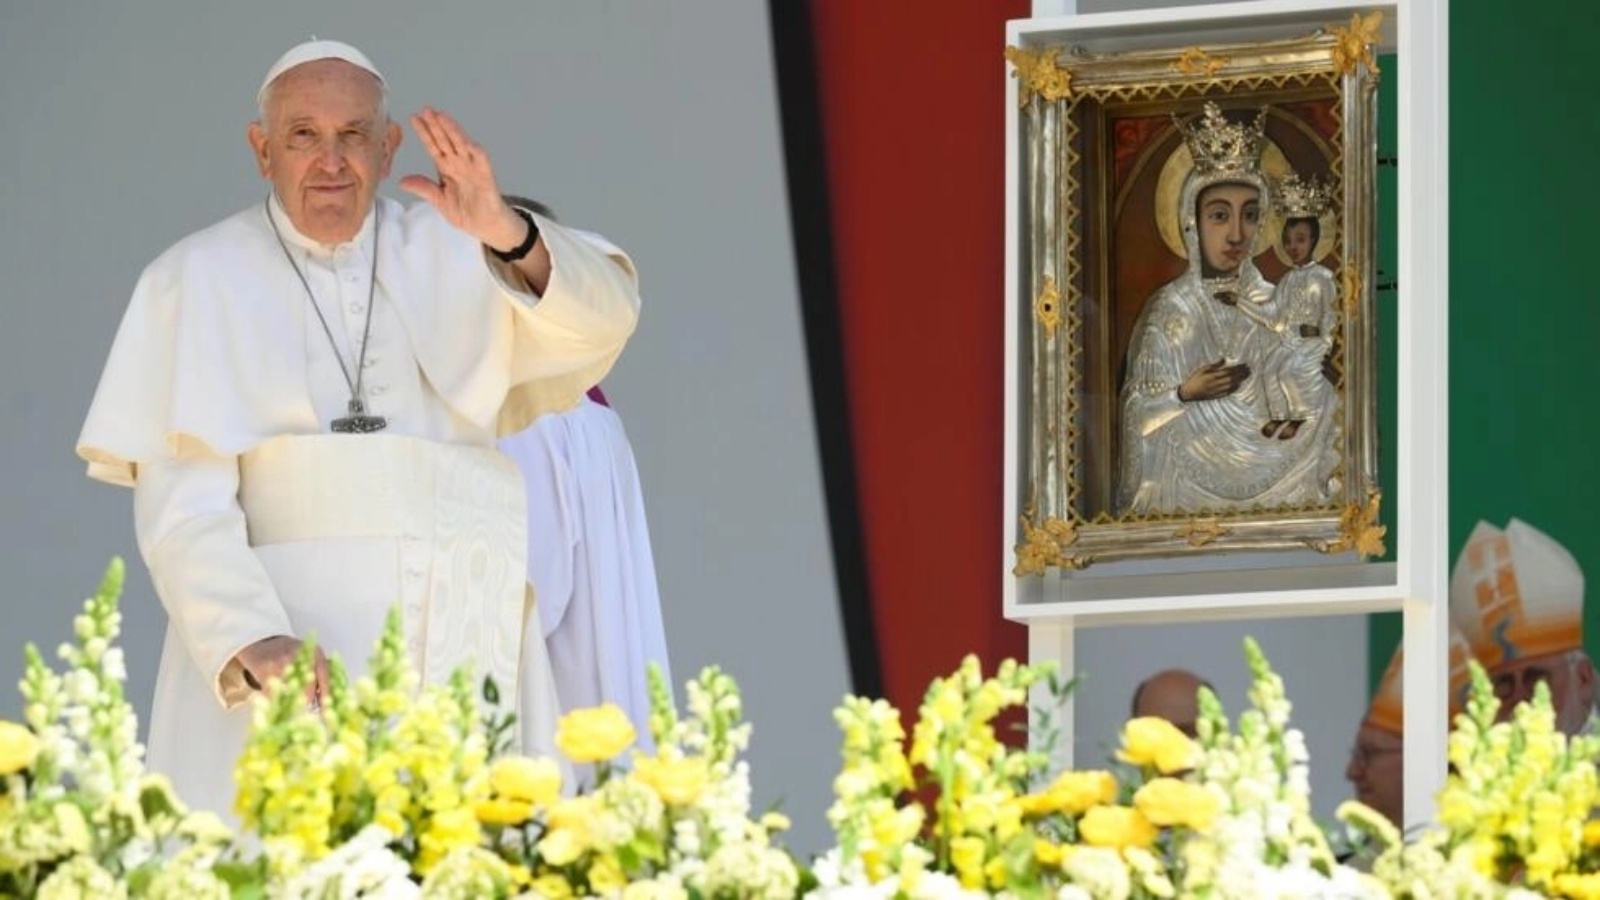 صورة وزّعتها إدارة الإعلام في الفاتيكان في 30 أبريل 2023، للبابا فرانسيس أثناء احتفاله بالقدّاس في بودابست خلال اليوم الأخير من زيارته إلى المجر التي استمرّت ثلاثة أيام 